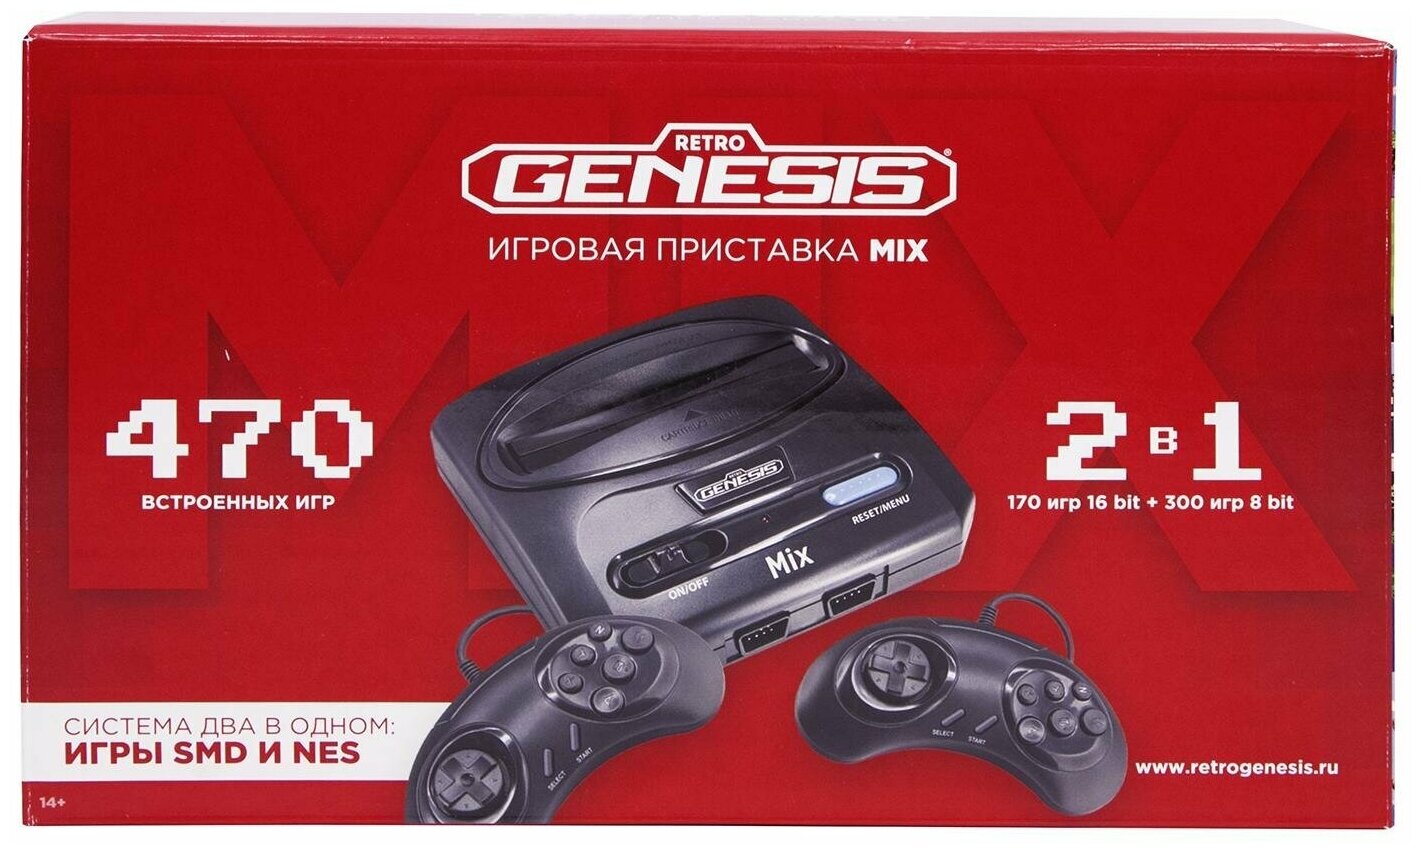 Игровая приставка 8 bit + 16 bit Retro Genesis Mix (470 в 1) + 470 встроенных игр + 2 геймпада (Черная)